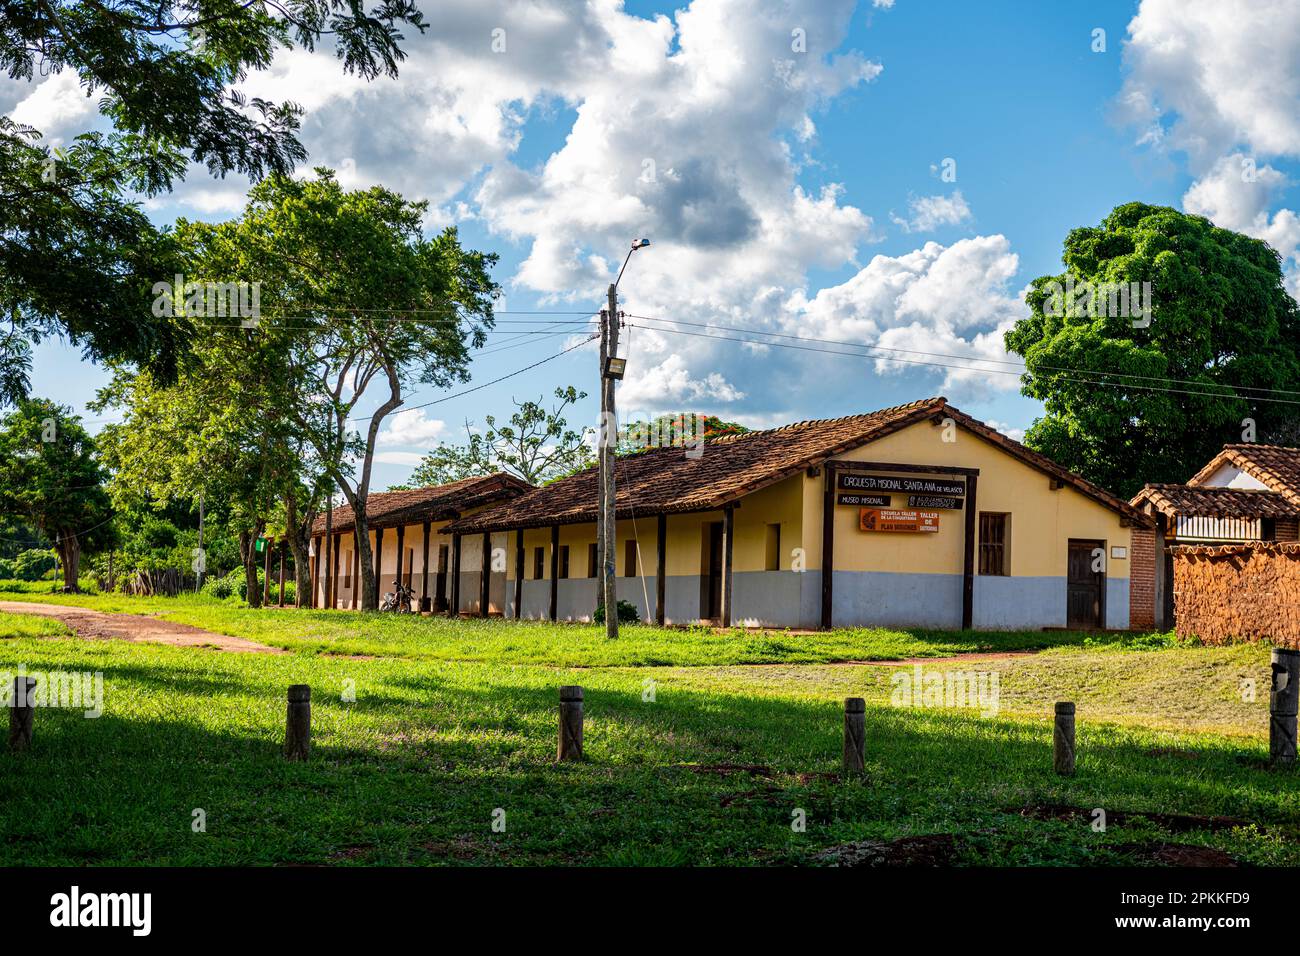 Maisons coloniales, église de la mission Santa Ana de Velasco, missions jésuites de Chiquitos, site du patrimoine mondial de l'UNESCO, département de Santa Cruz, Bolivie Banque D'Images